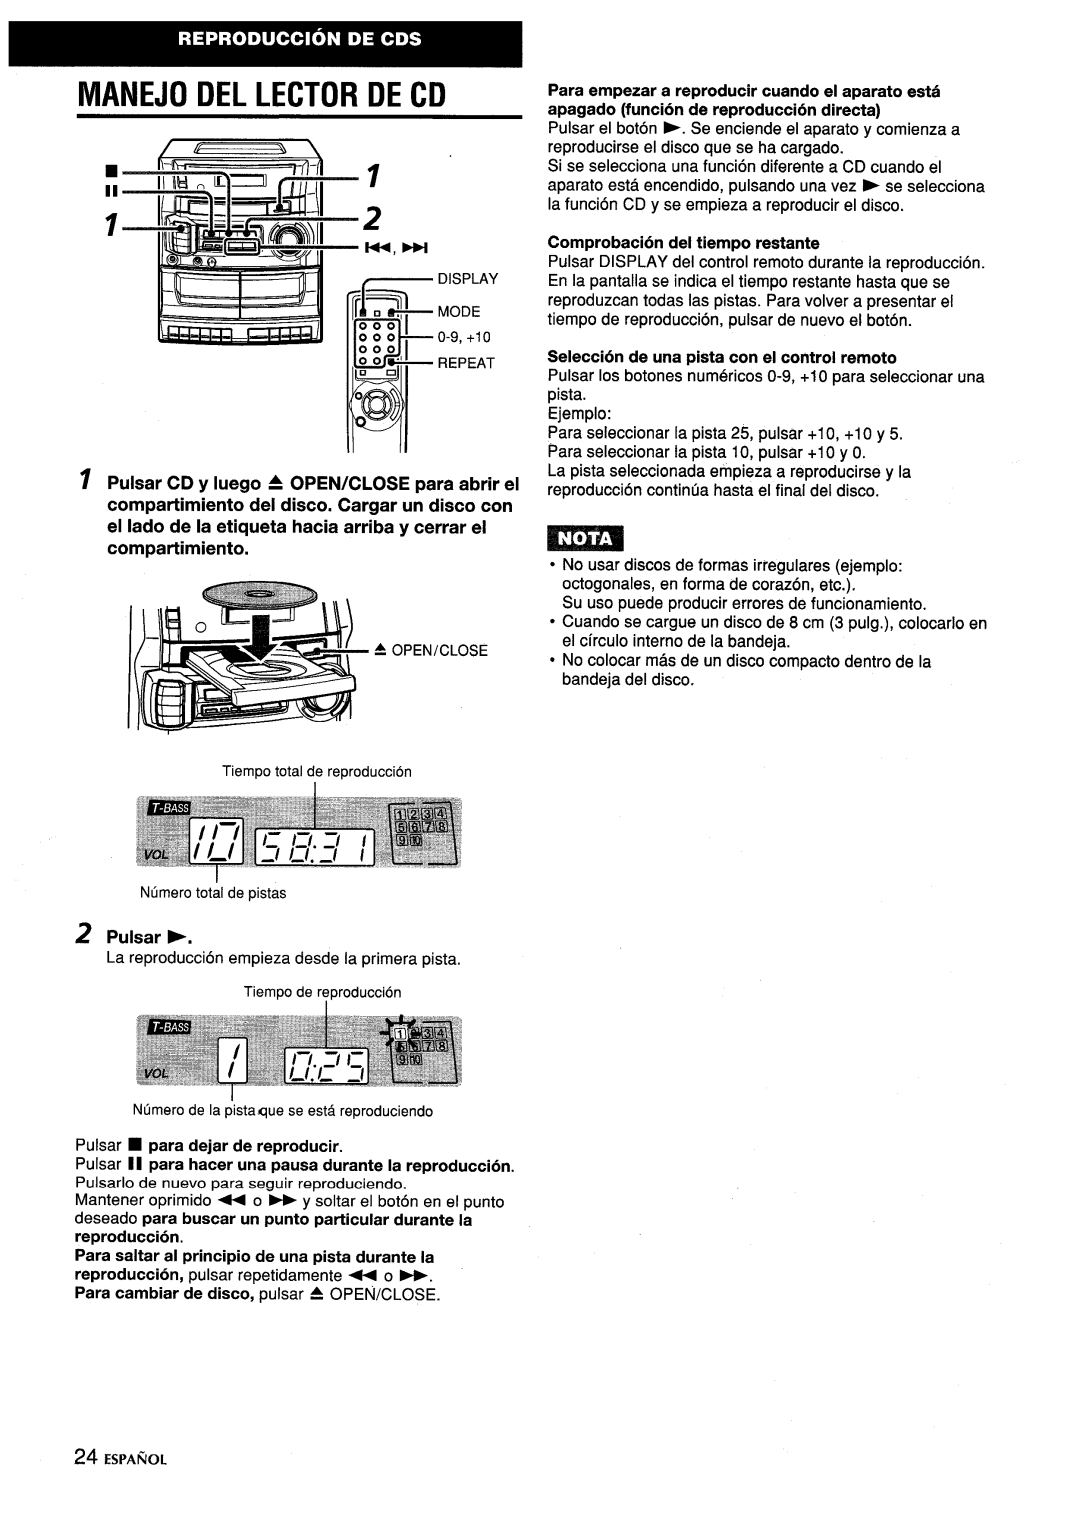 Aiwa CA-DW635 manual Manejo Del Lector De Cd, I Pulsar CD y Iuego A OPEN/CLOSE para abrir el, Pulsar ~, Espa~Ol 